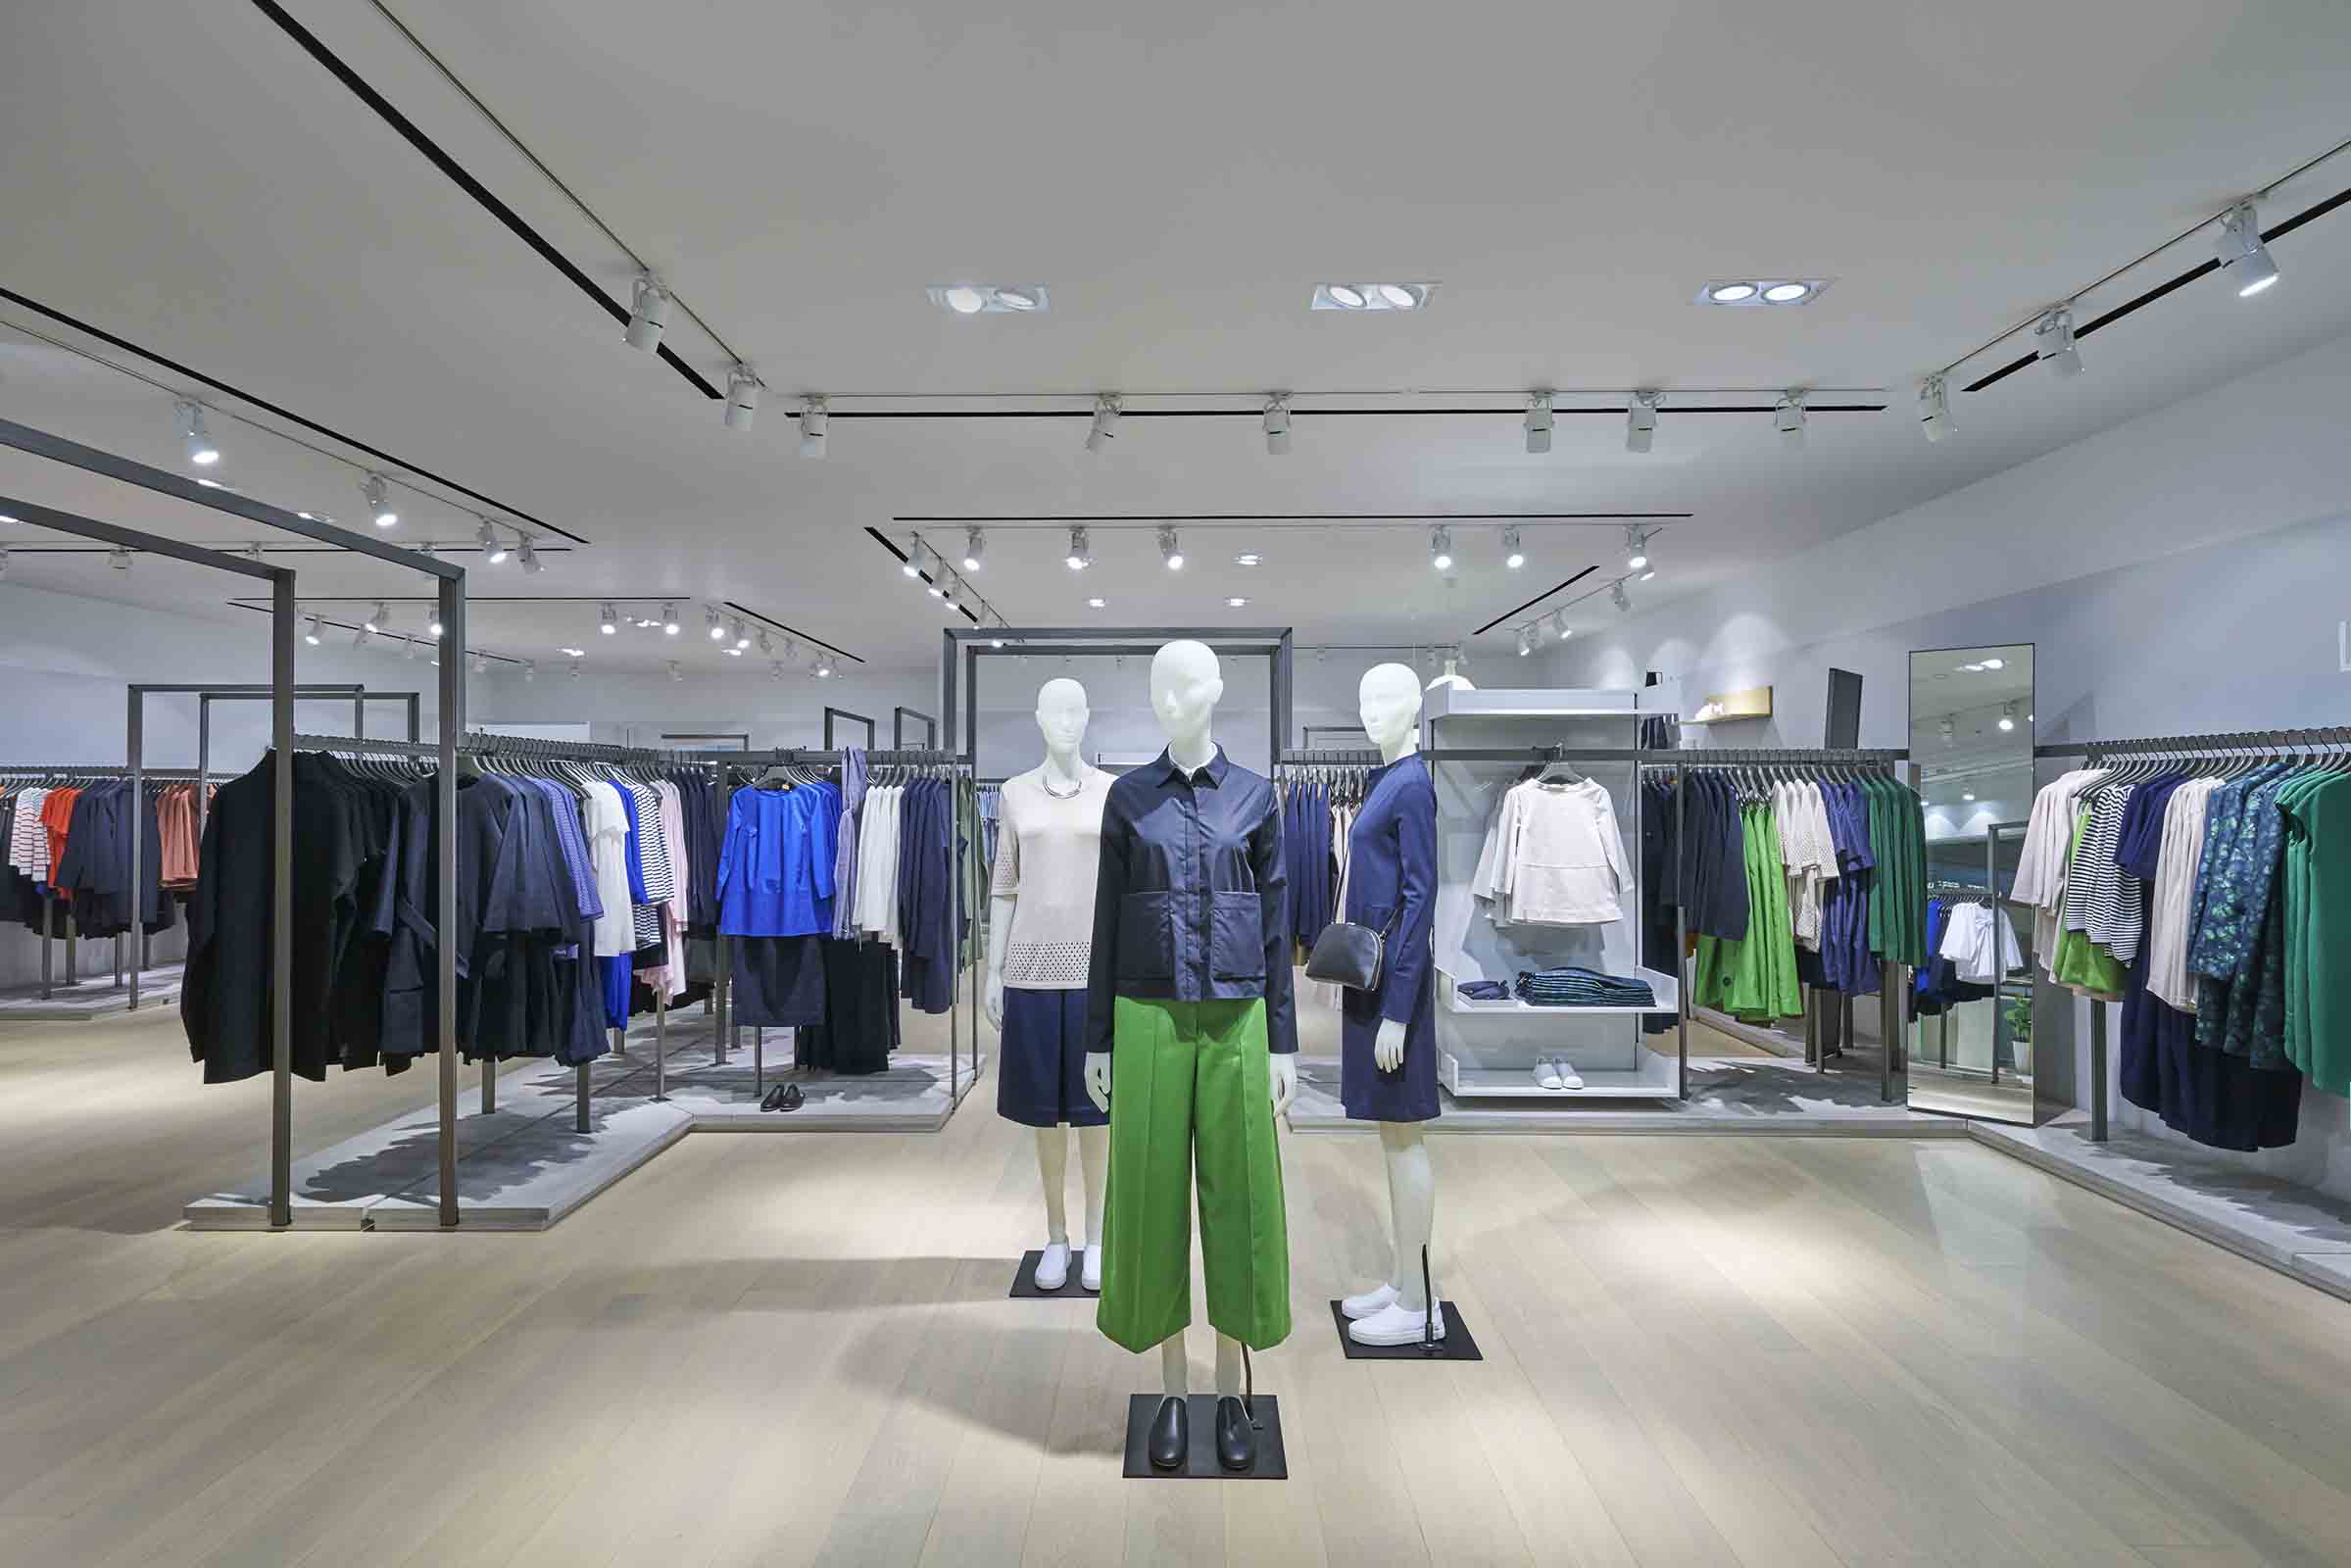 COS unveils new concept store in EmQuartier, focusing on